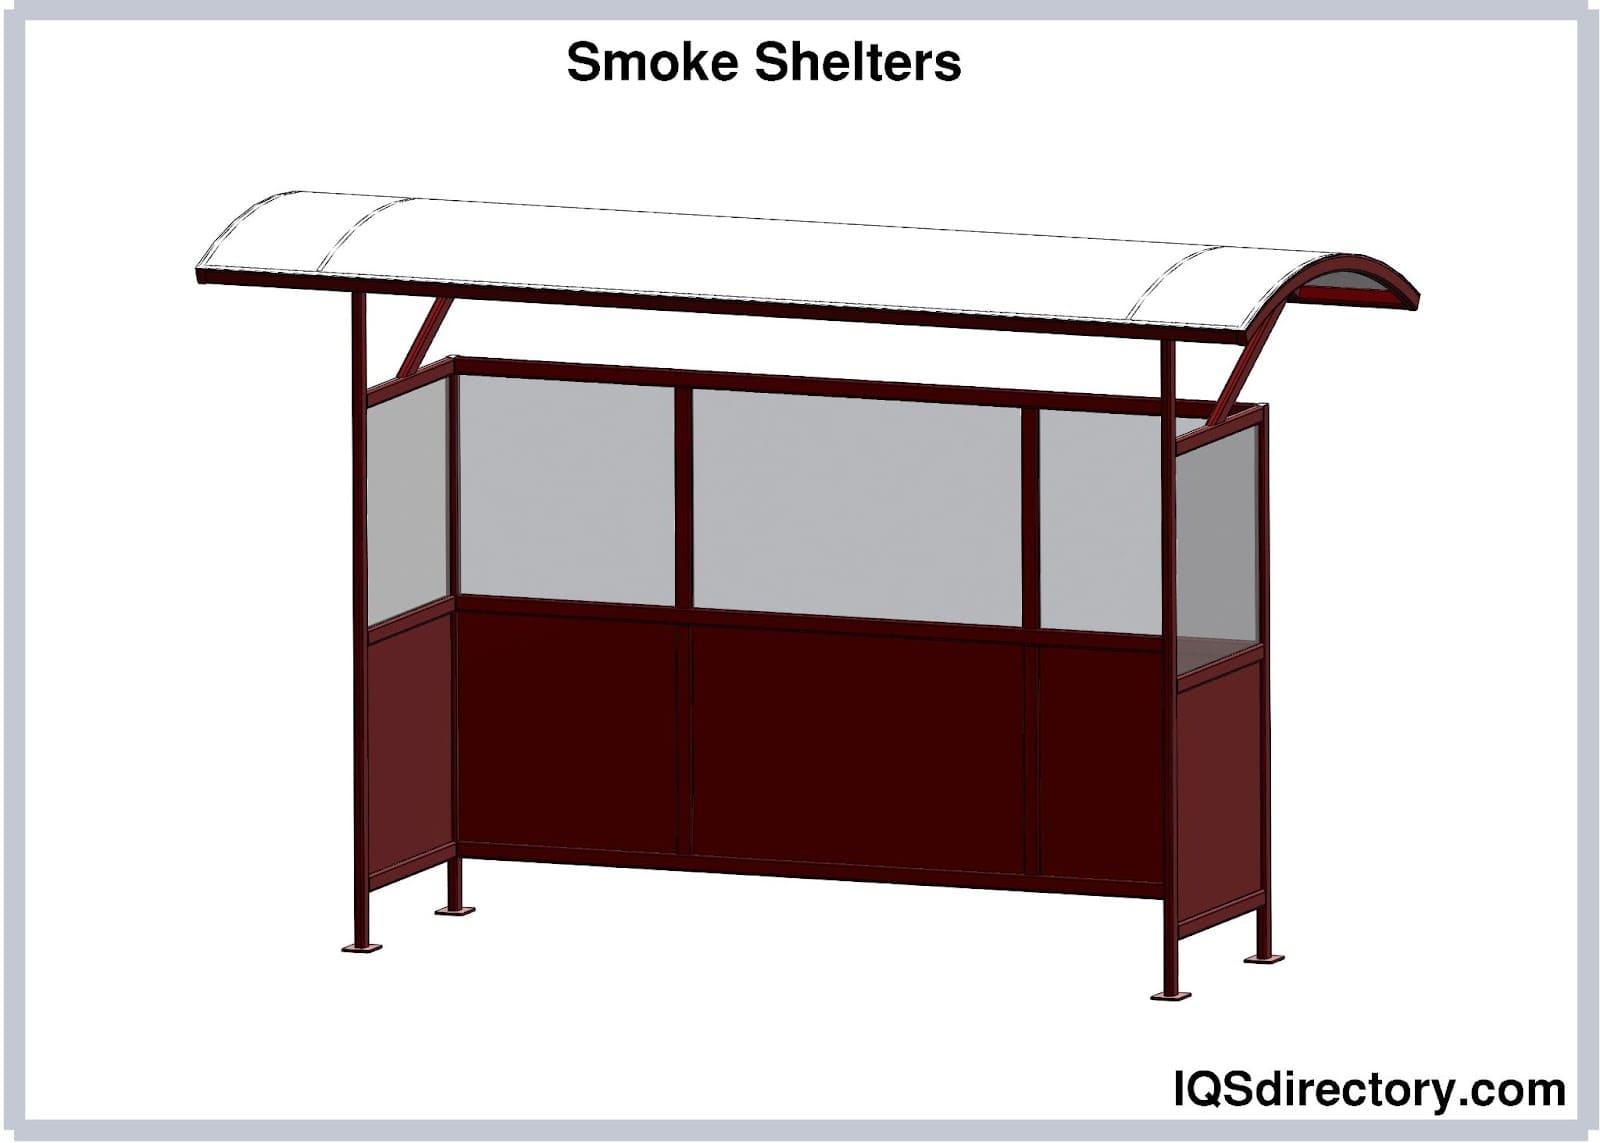 Smoke Shelters